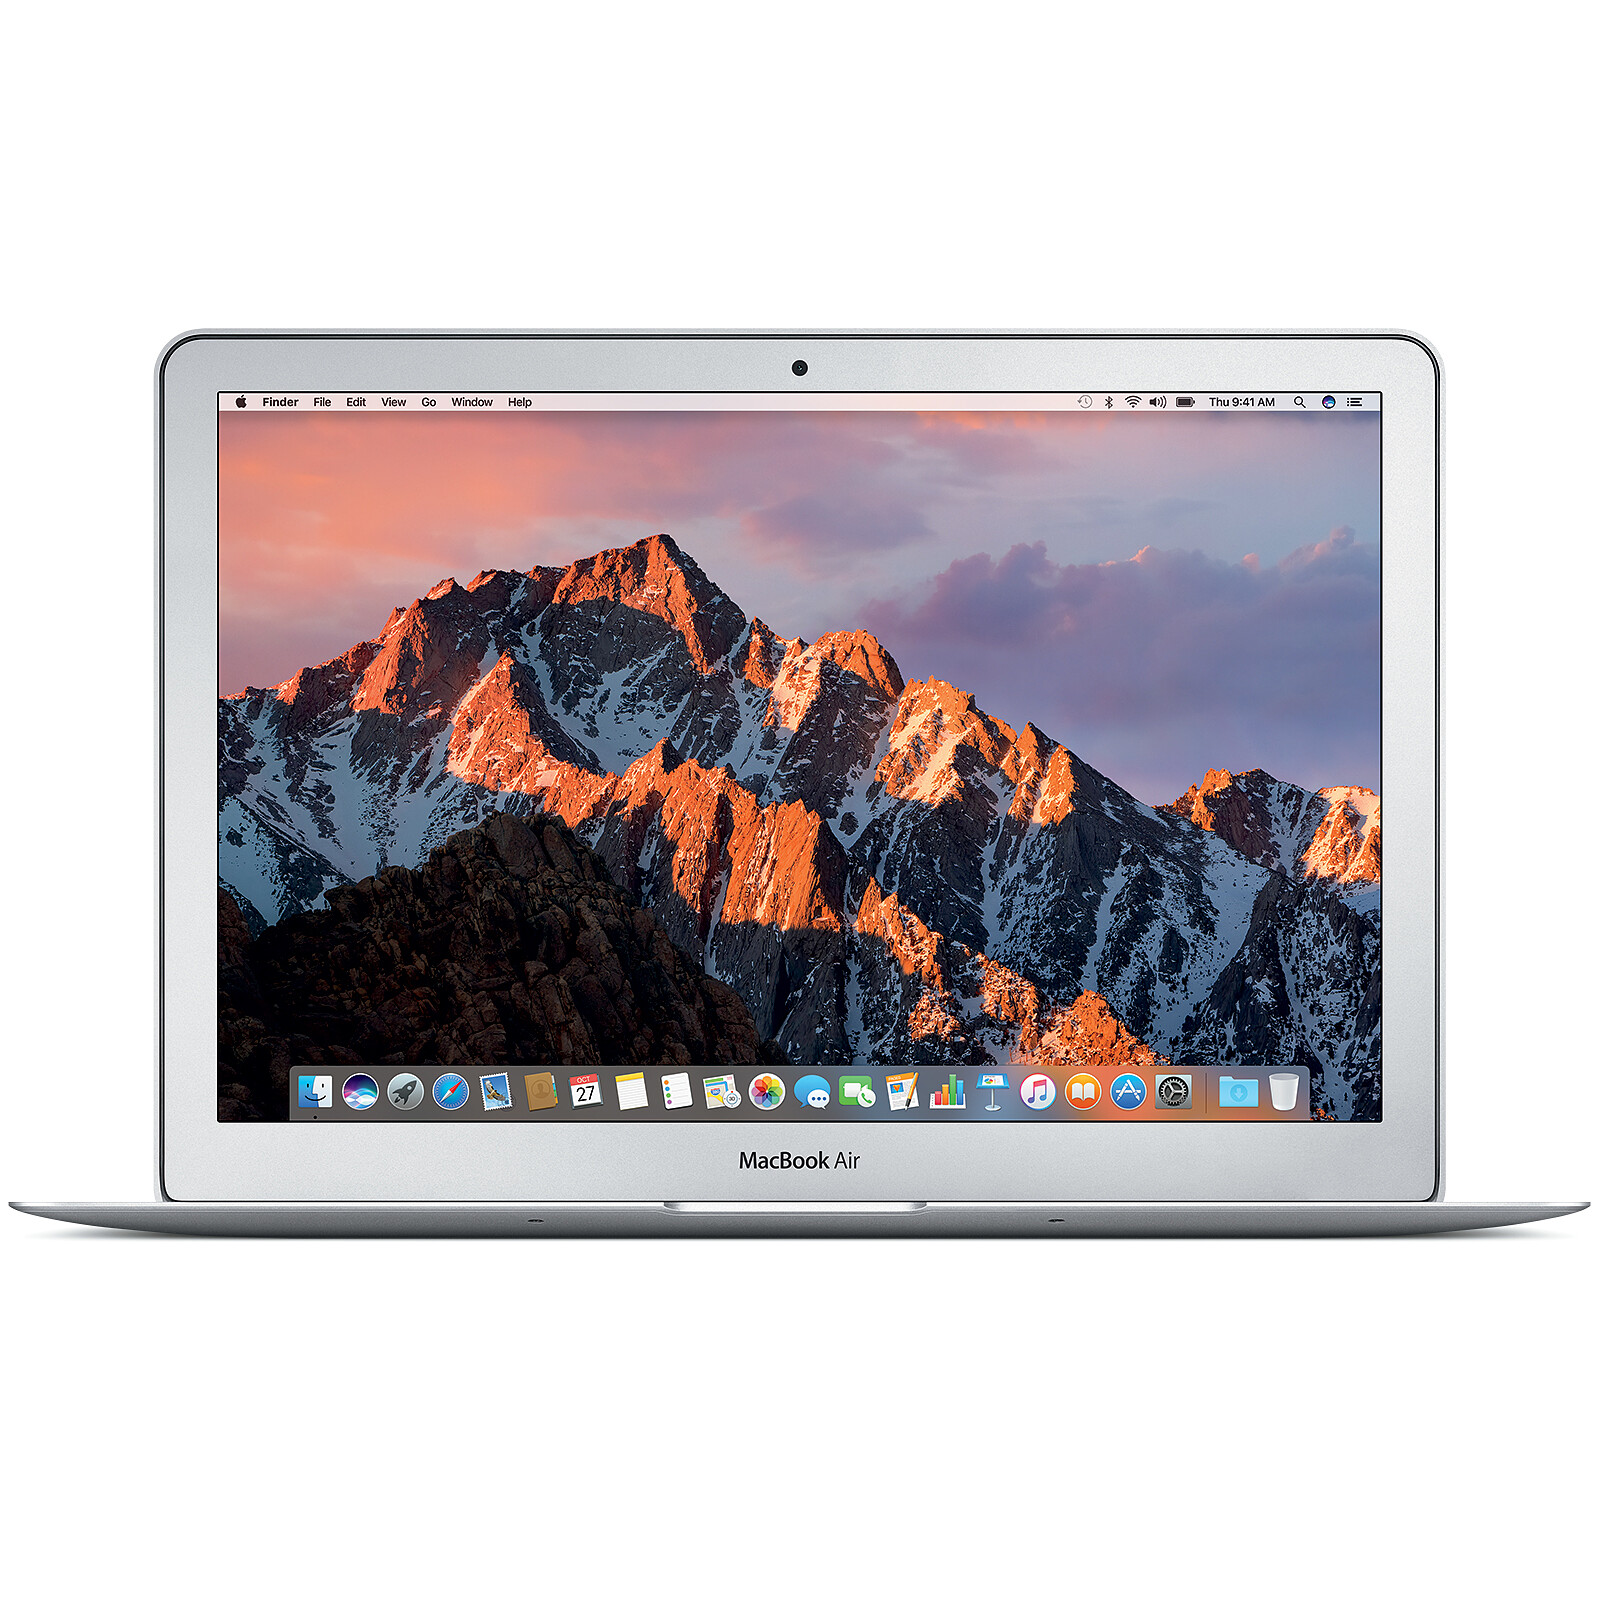 Notre avis sur le MacBook Pro 13 pouces 2020 : fiche technique complète et  tarifs